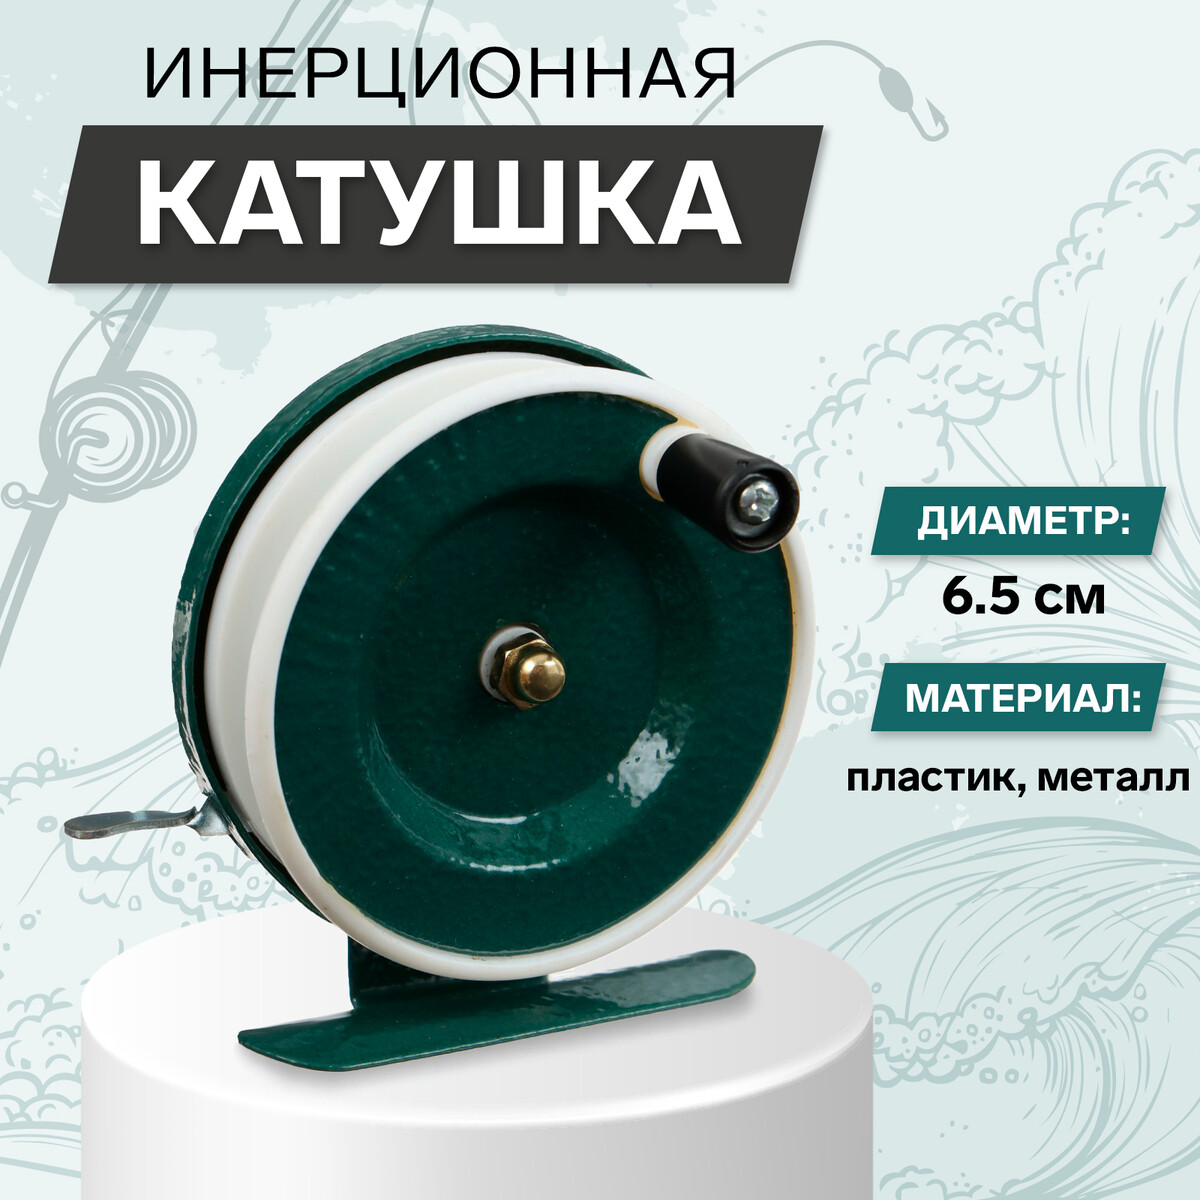 Катушка инерционная, металл пластик, диаметр 6.5 см, цвет темно-зеленый/белый, 801 No brand